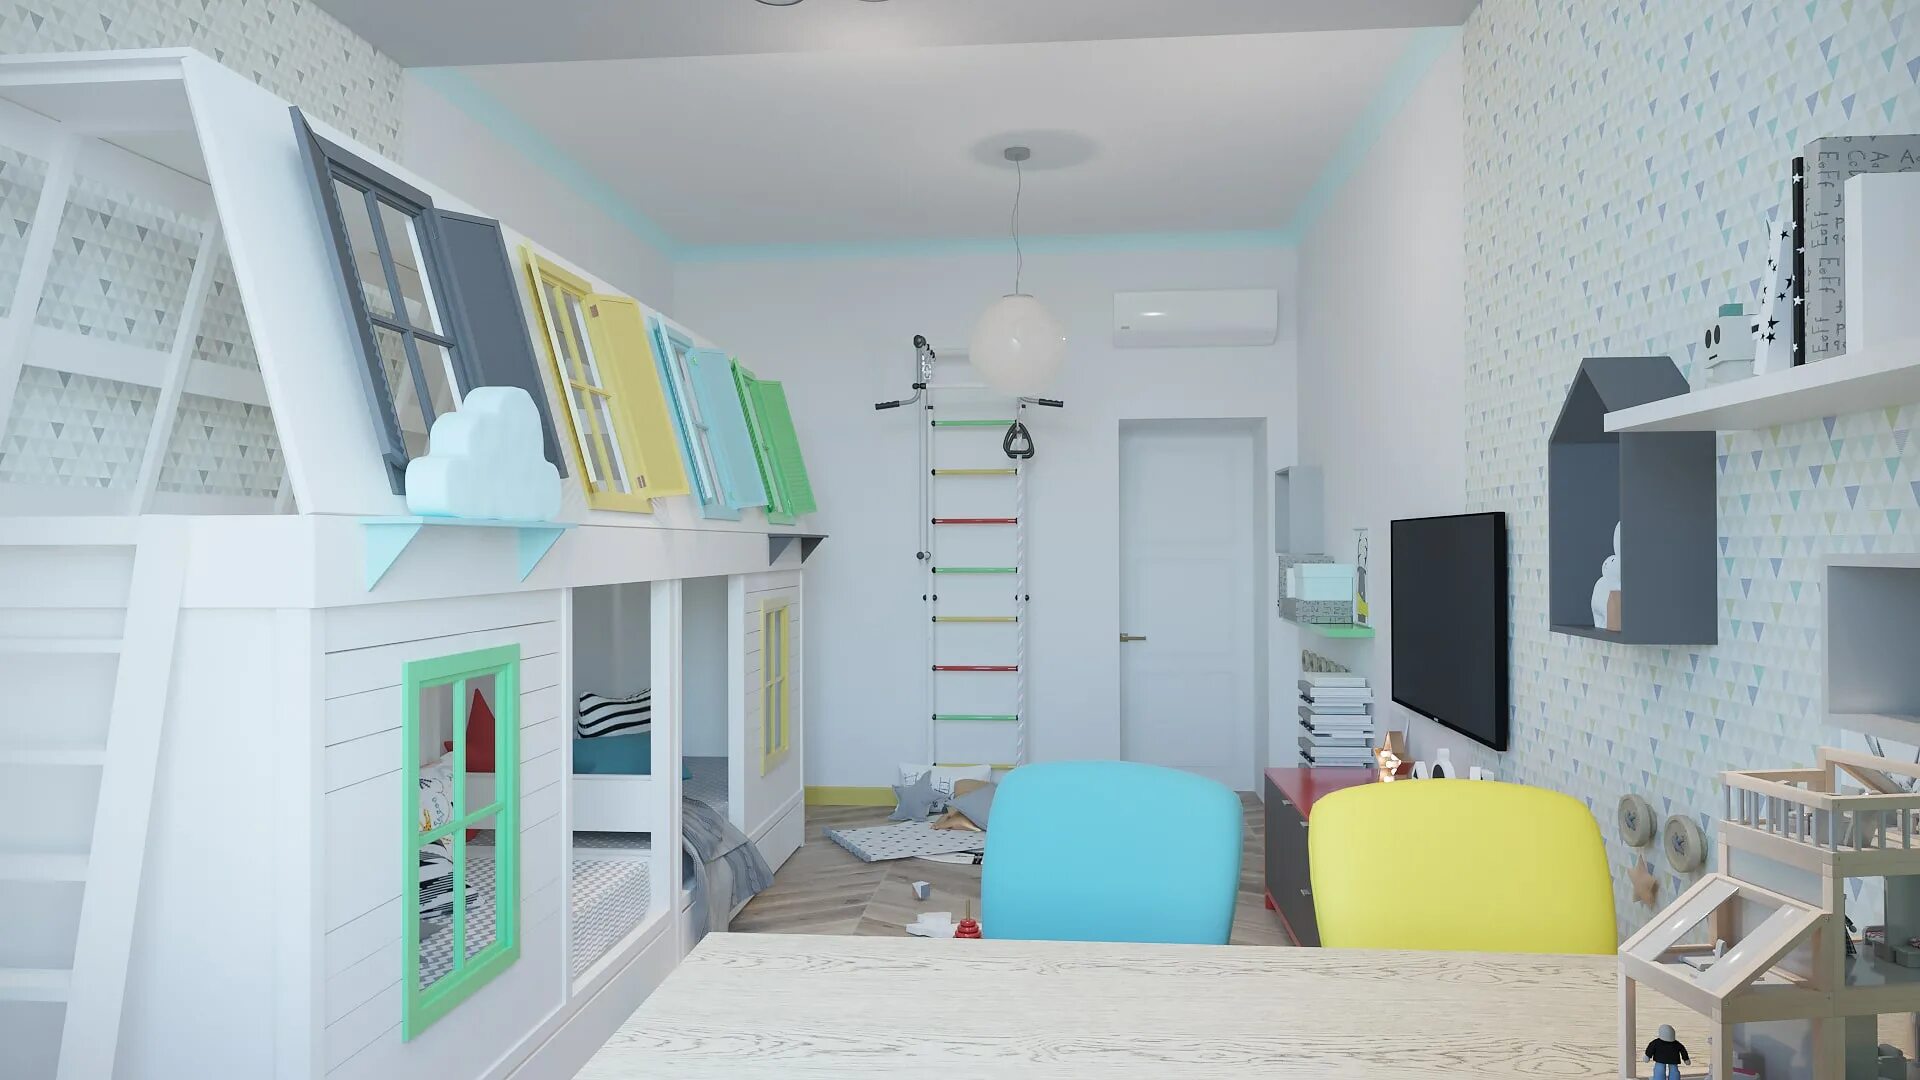 Прибирать комнату. Мебель для детей в интерьере. Детская комната услуги реальные фото. Как отремонтировать детскую комната без дизайн проекта. Заказ дизайн проекта детской.